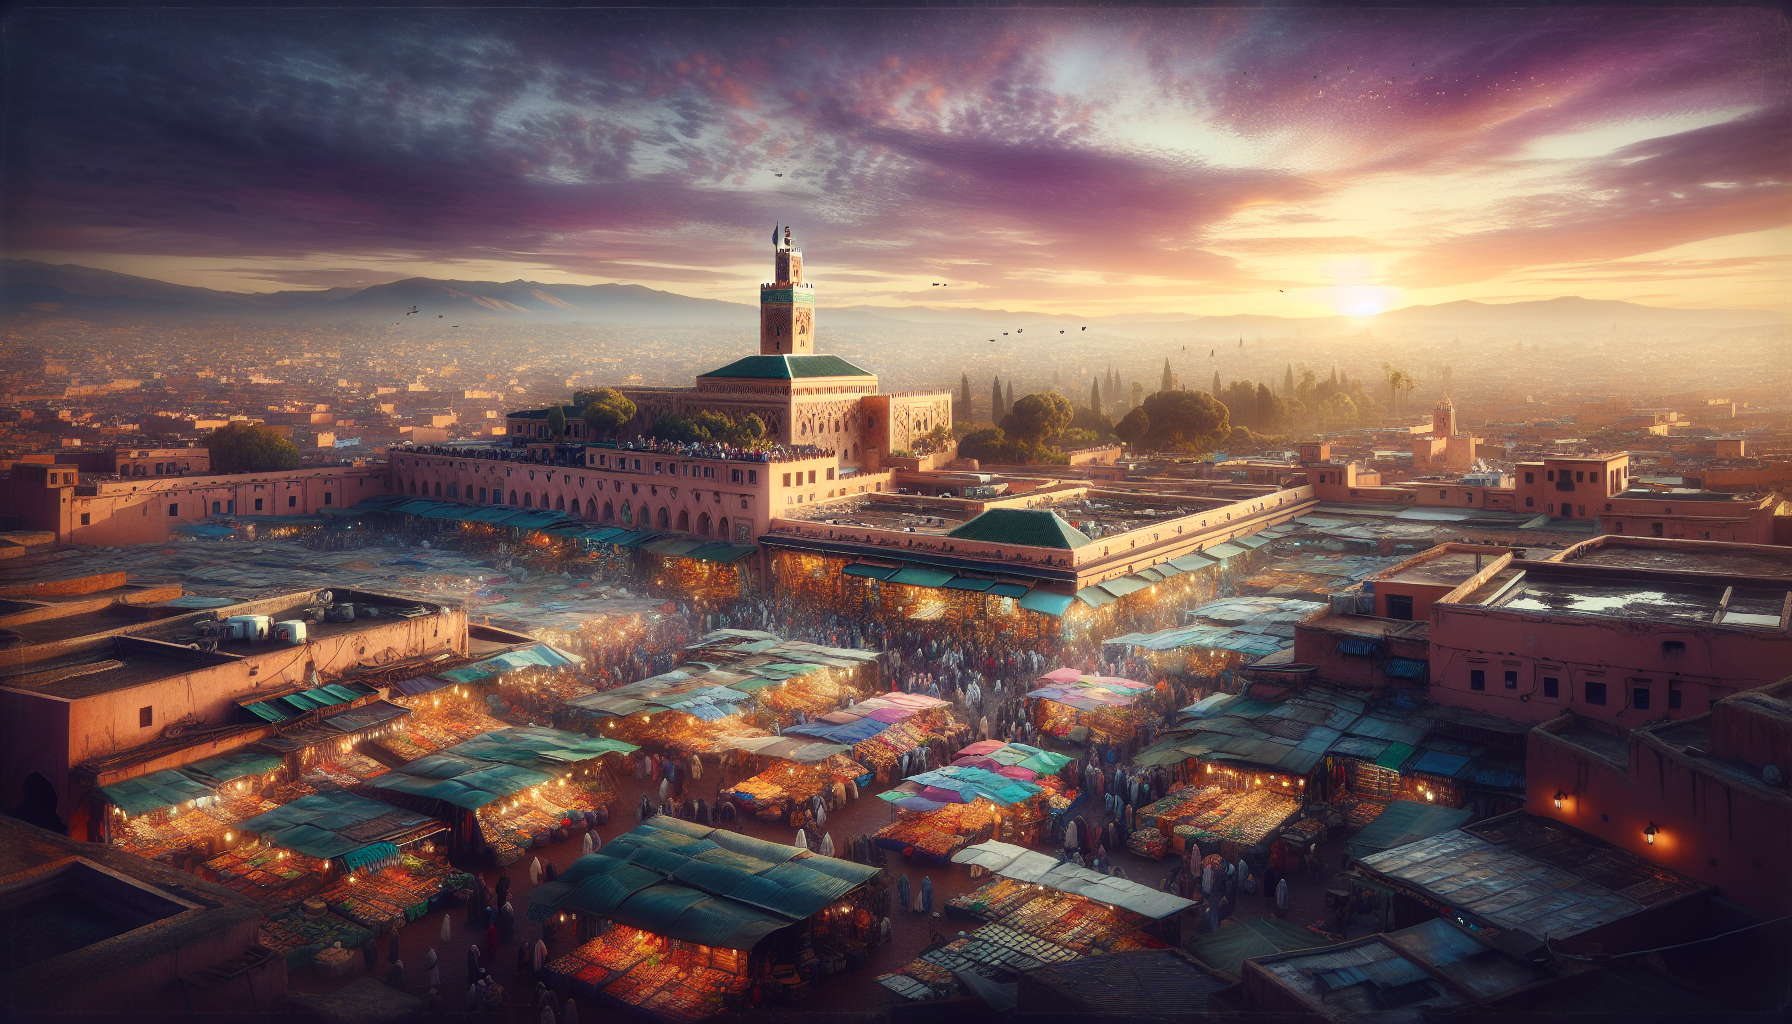 Cover Image for Quelles sont les attractions incontournables de Marrakech ?